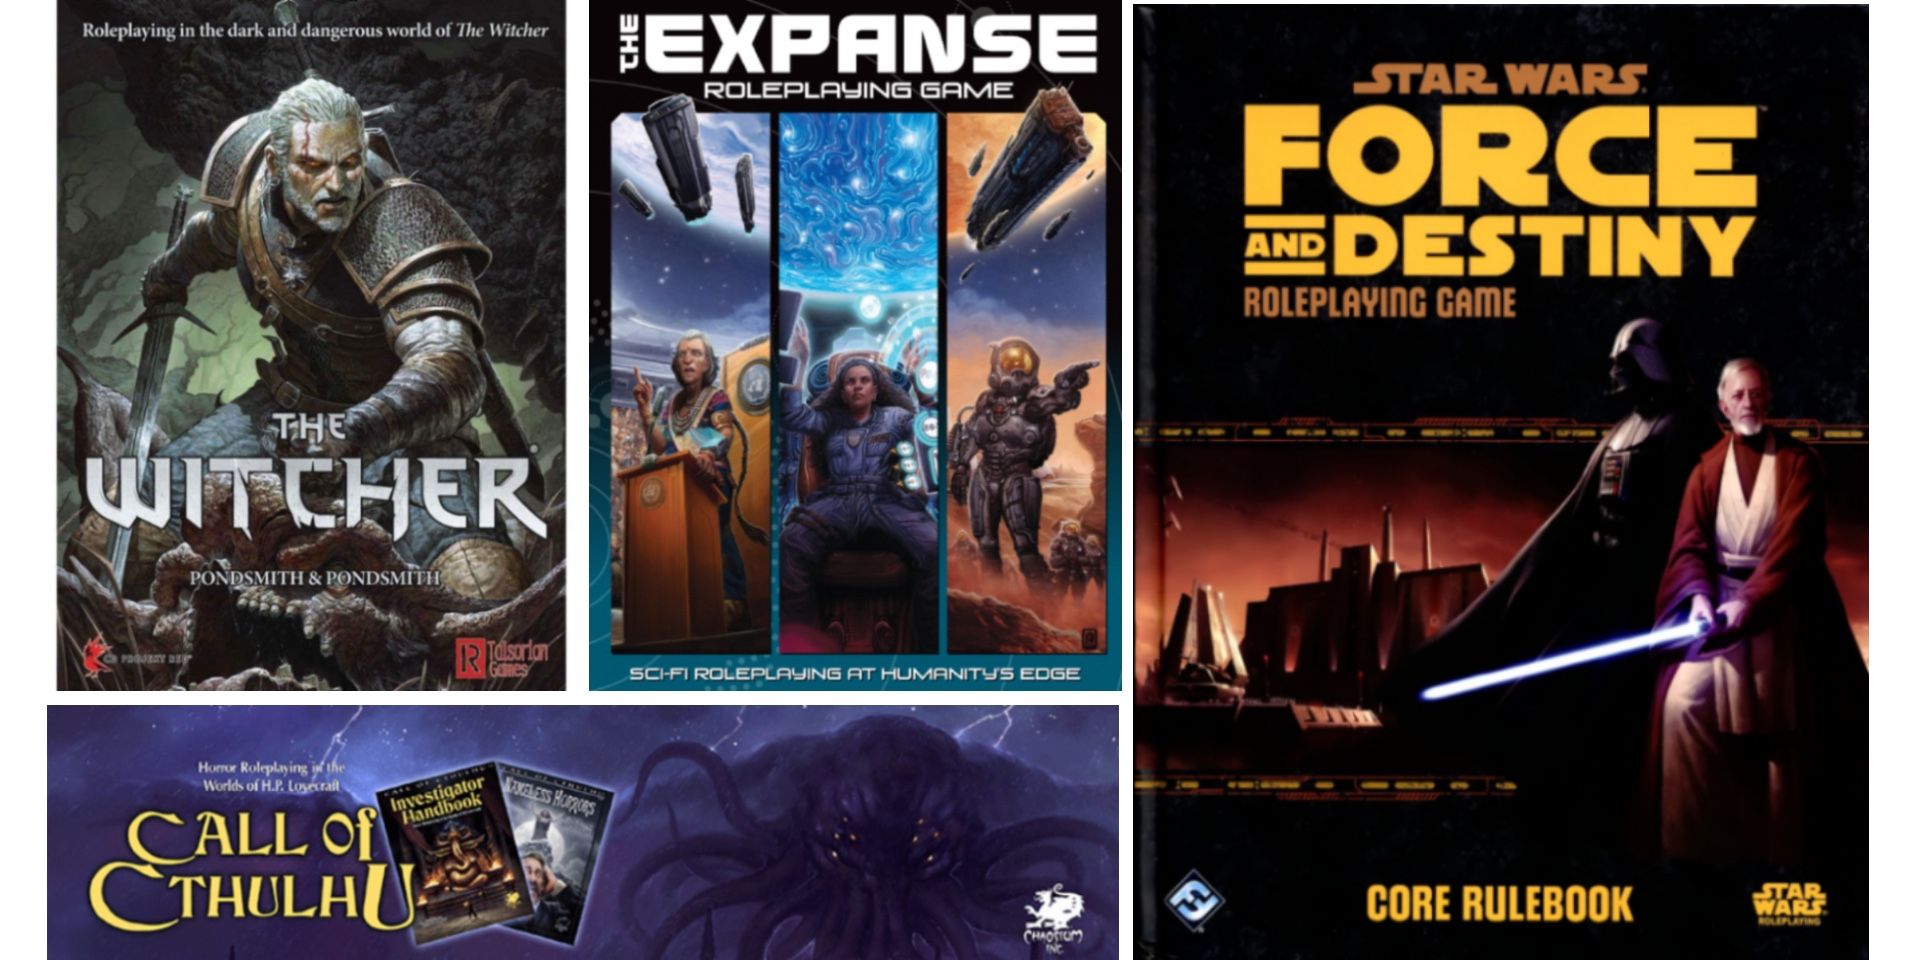 Star Wars: Force & Destiny RPG - Beginner Game, RPGs